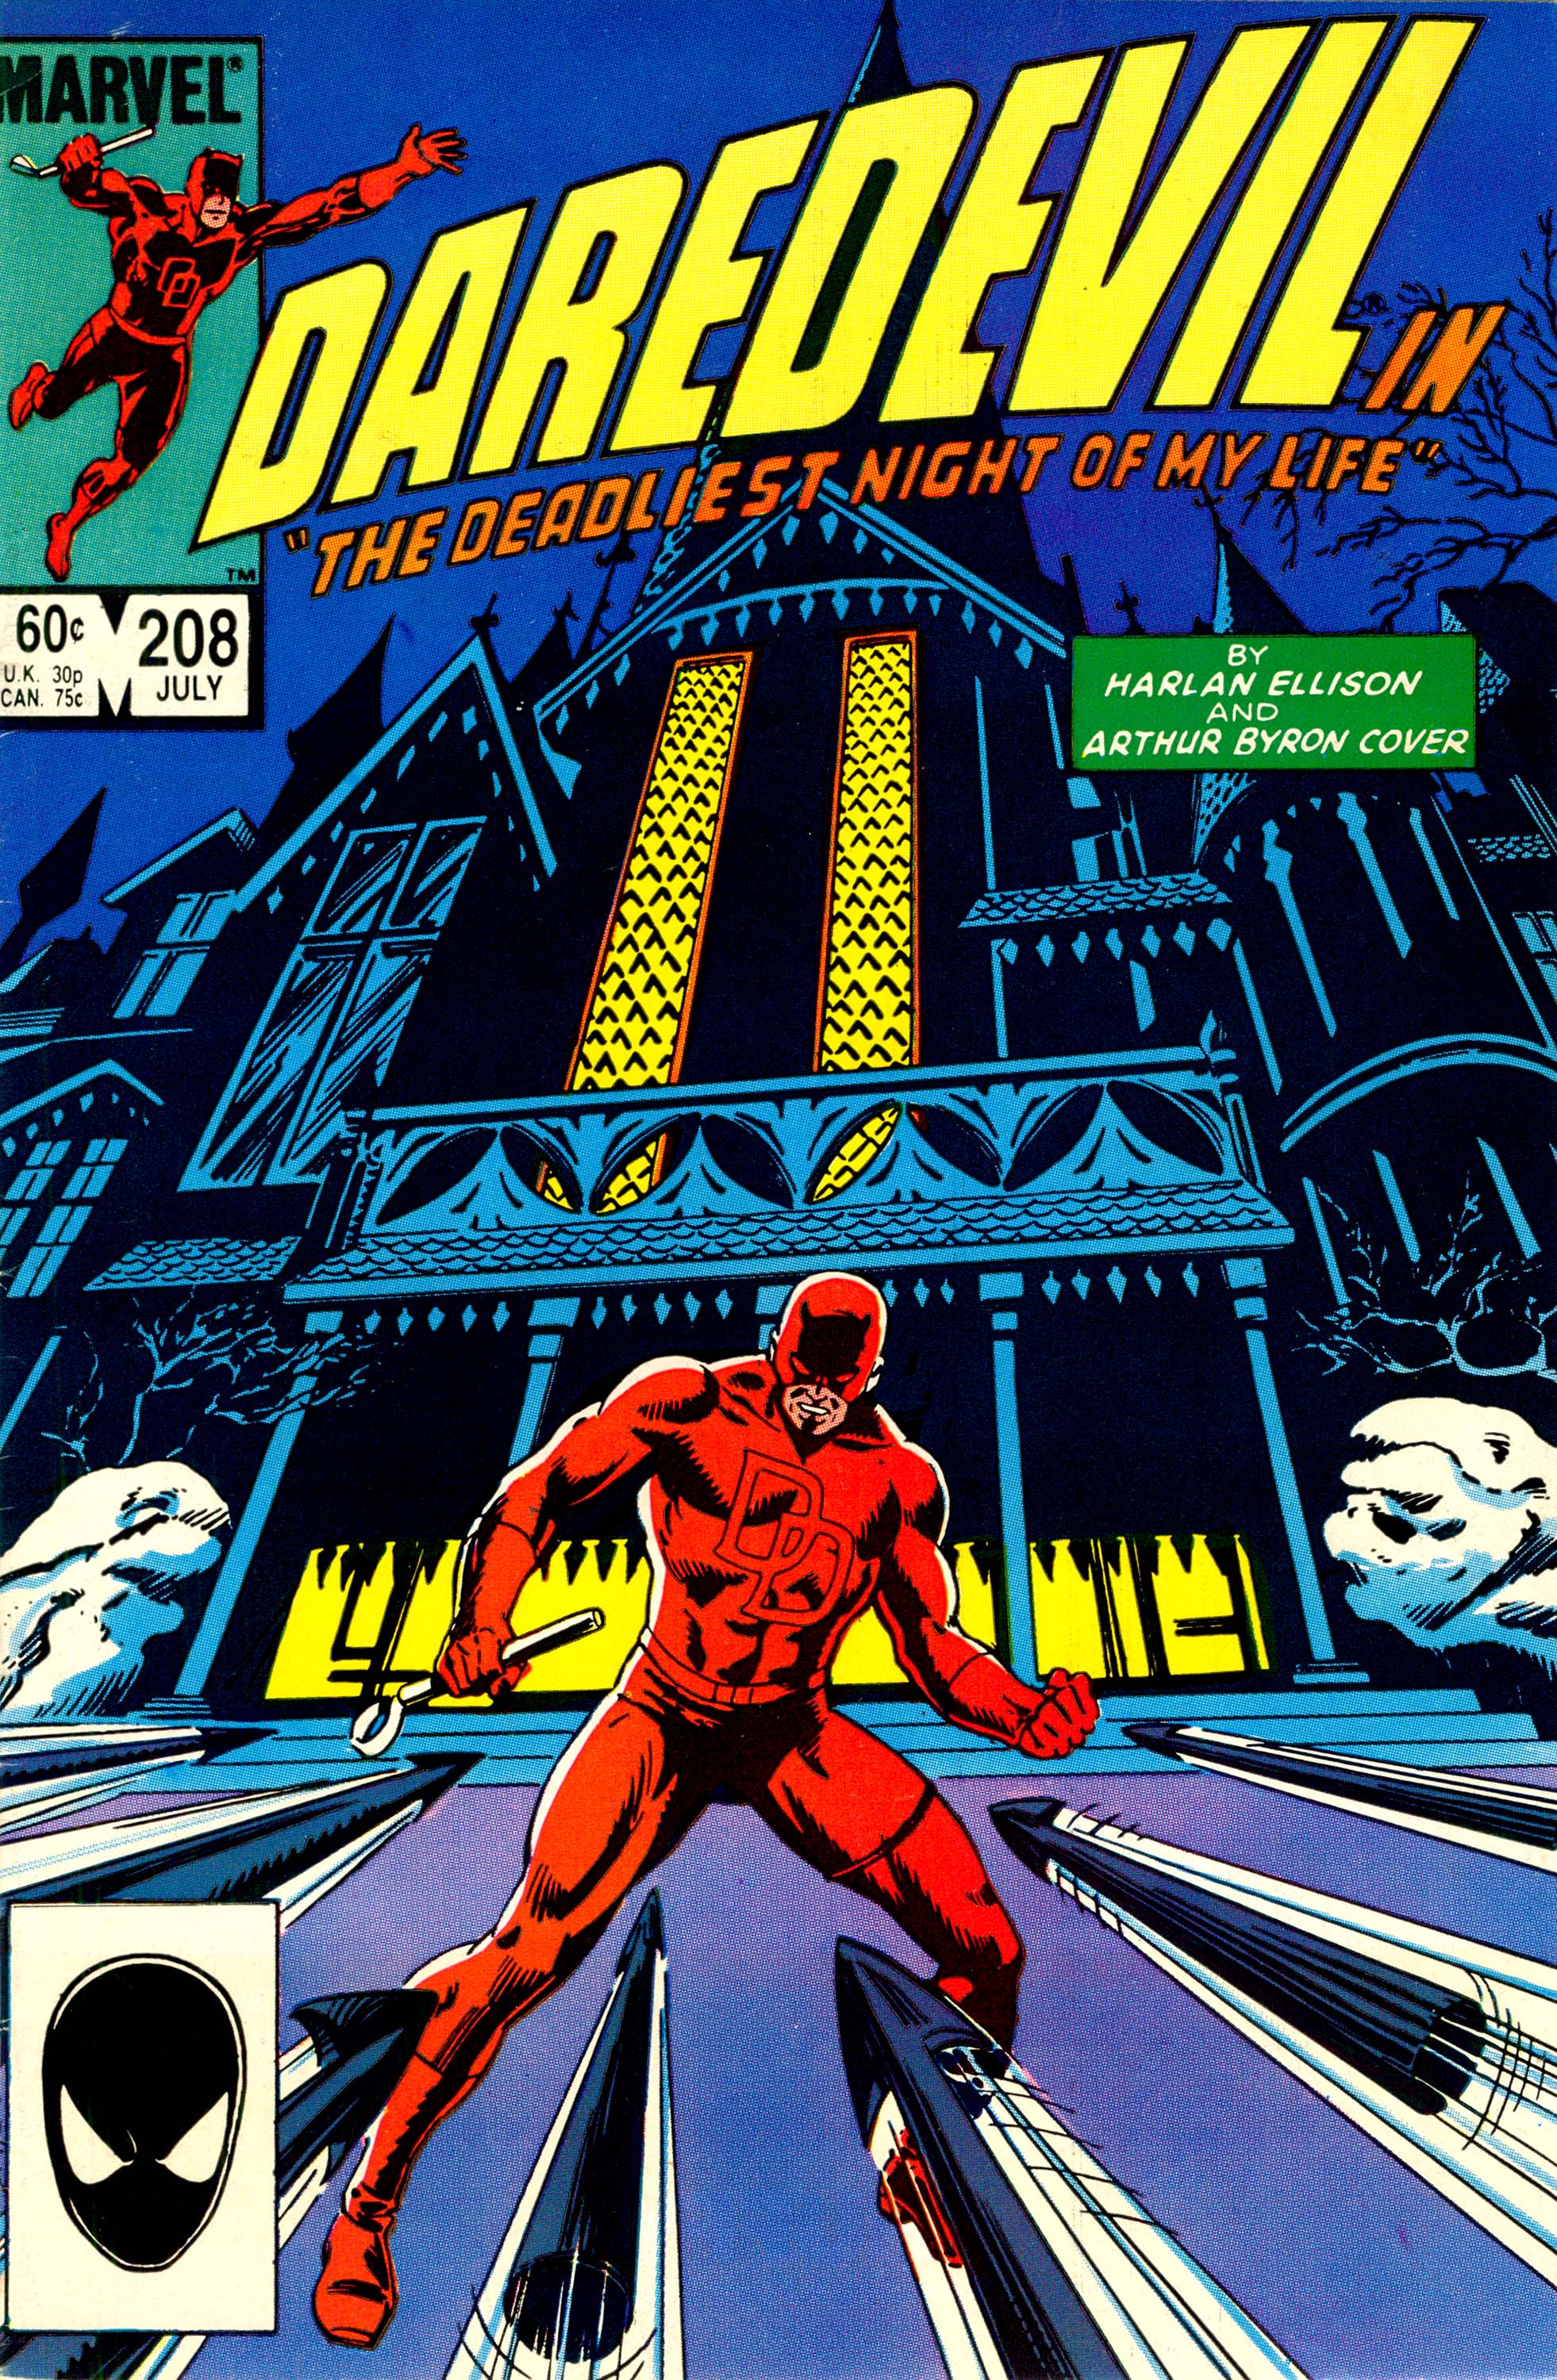 Daredevil #208, cover, art by David Mazzuchelli